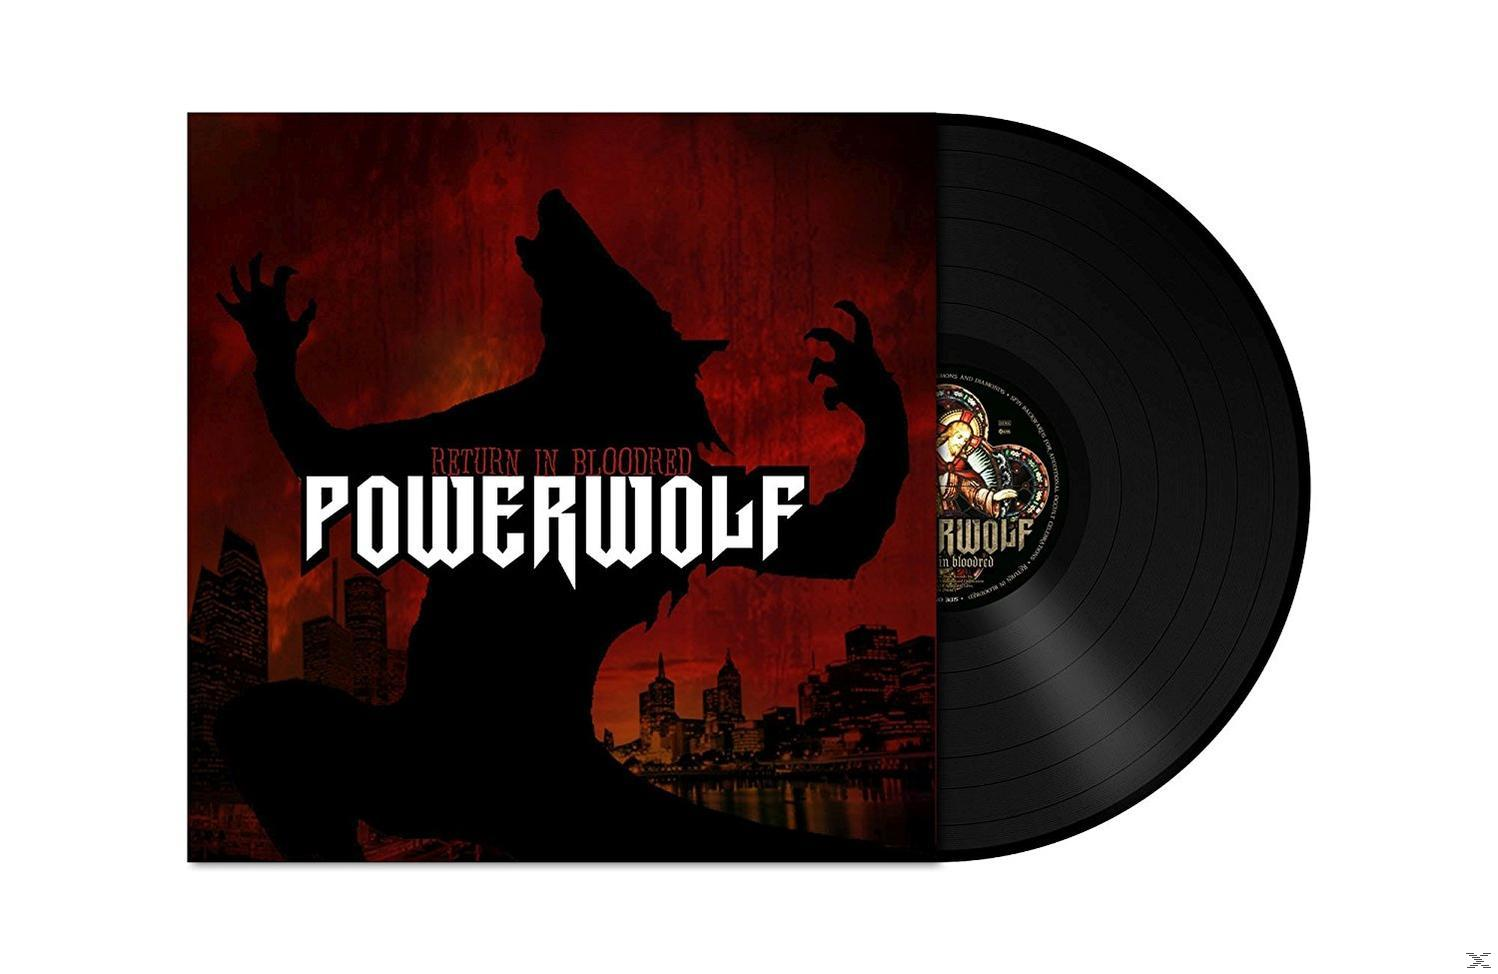 In Return - (Vinyl) Powerwolf Bloodred -